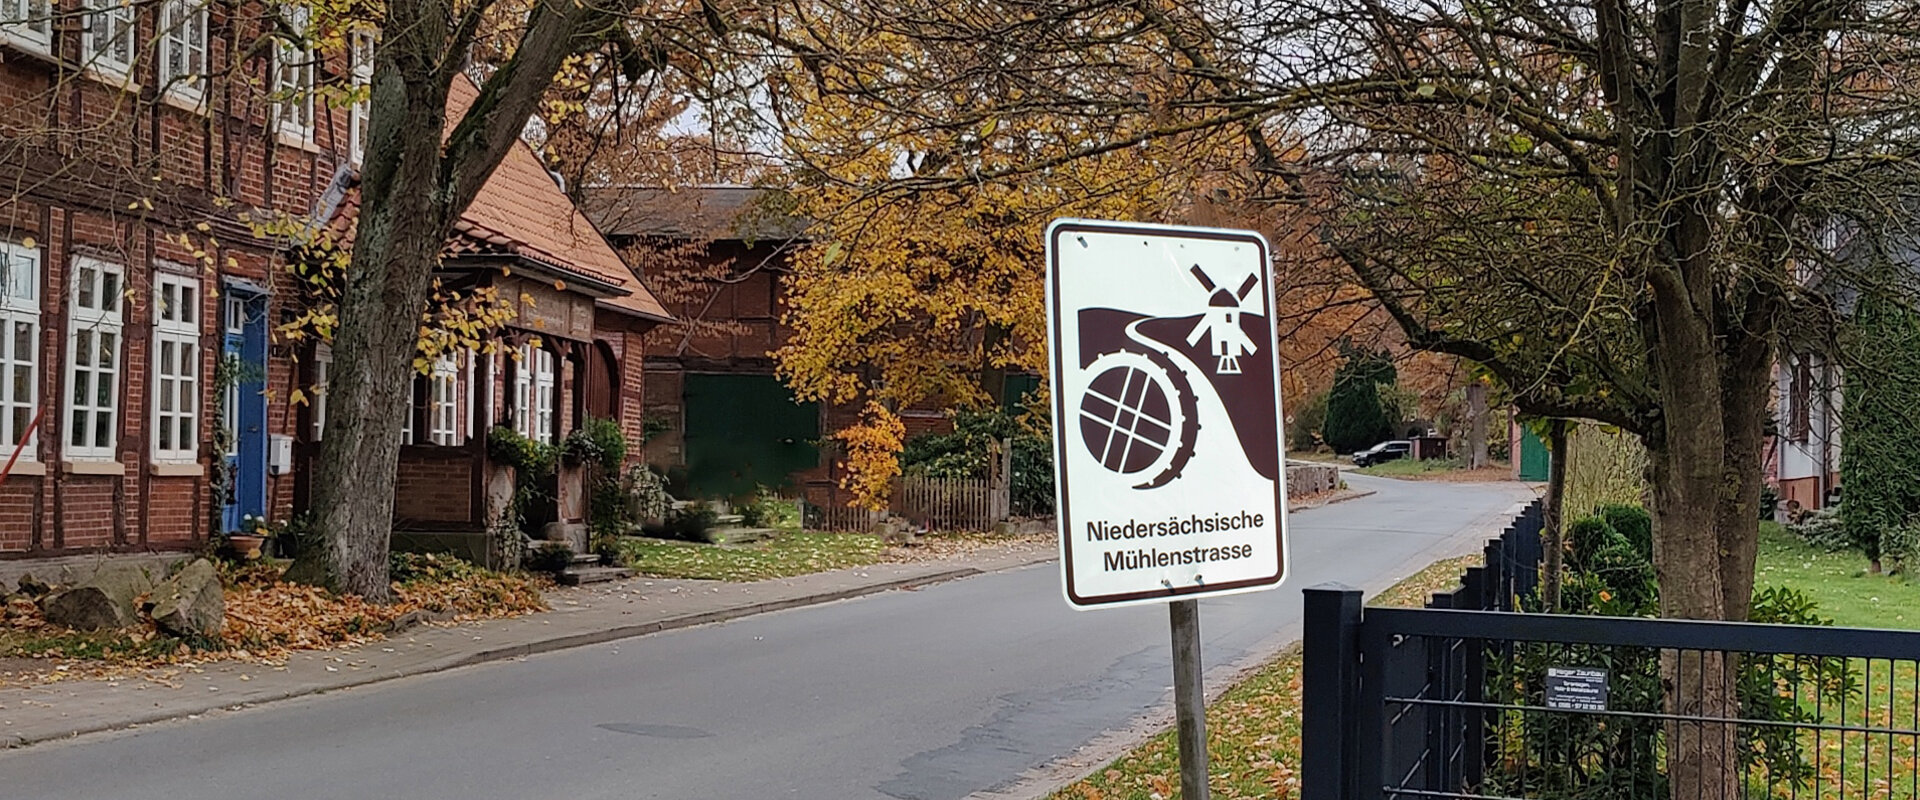 Herbstliche Dorfstraße mit einem Schild der Niedersächsischen Mühlenstraße